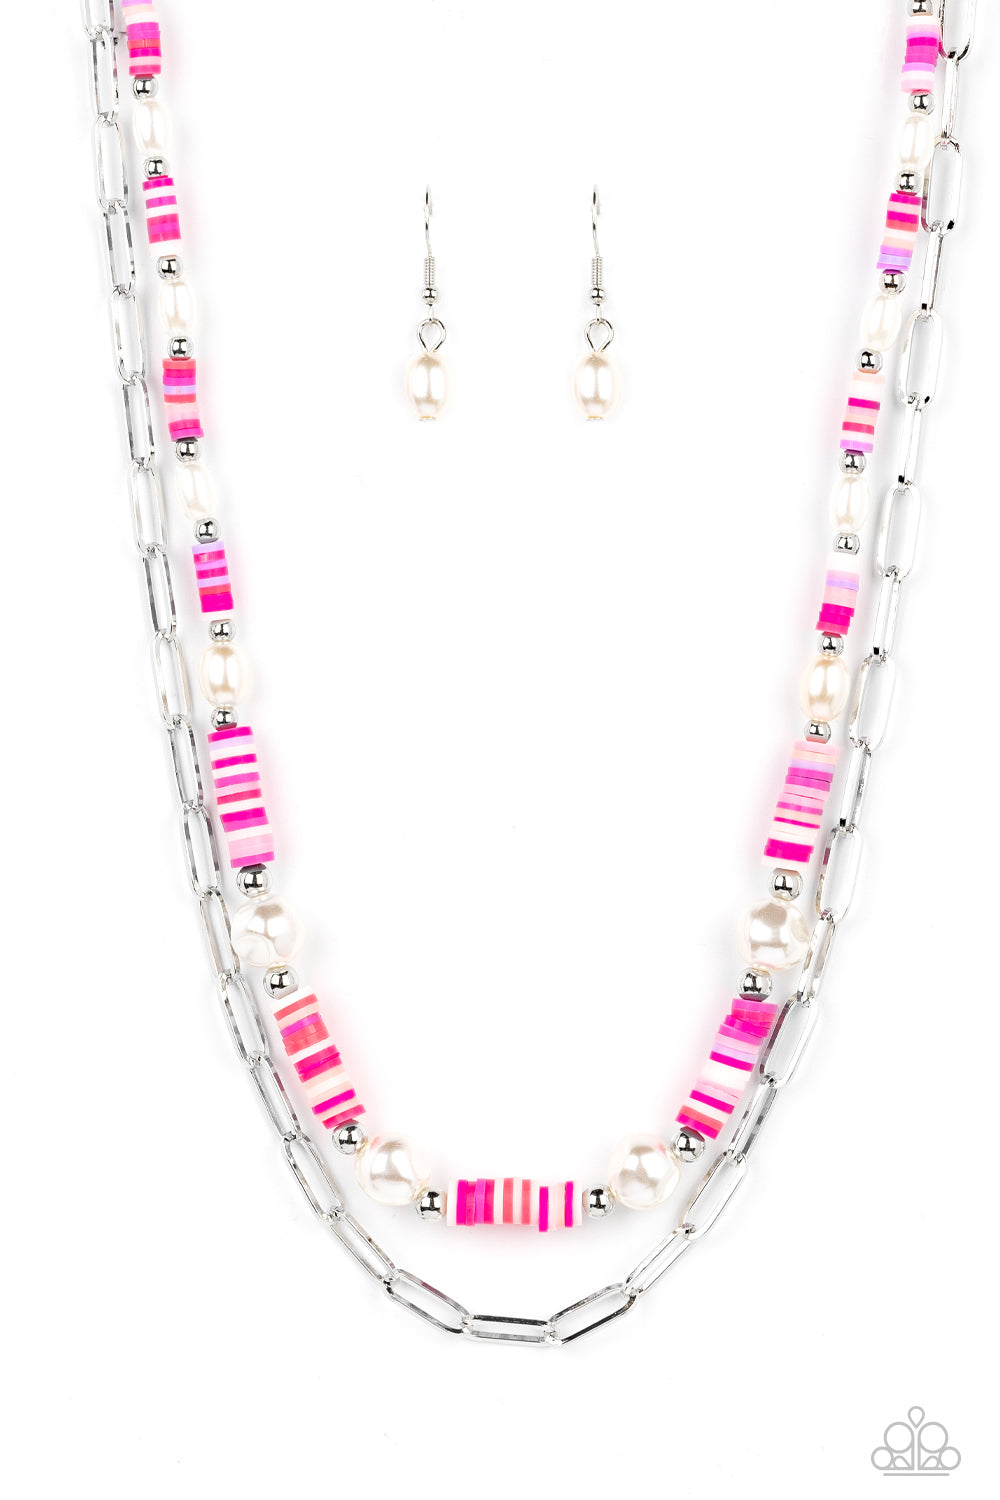 LVXNBA Chain Links Necklace S00 - Fashion Jewelry MP3052